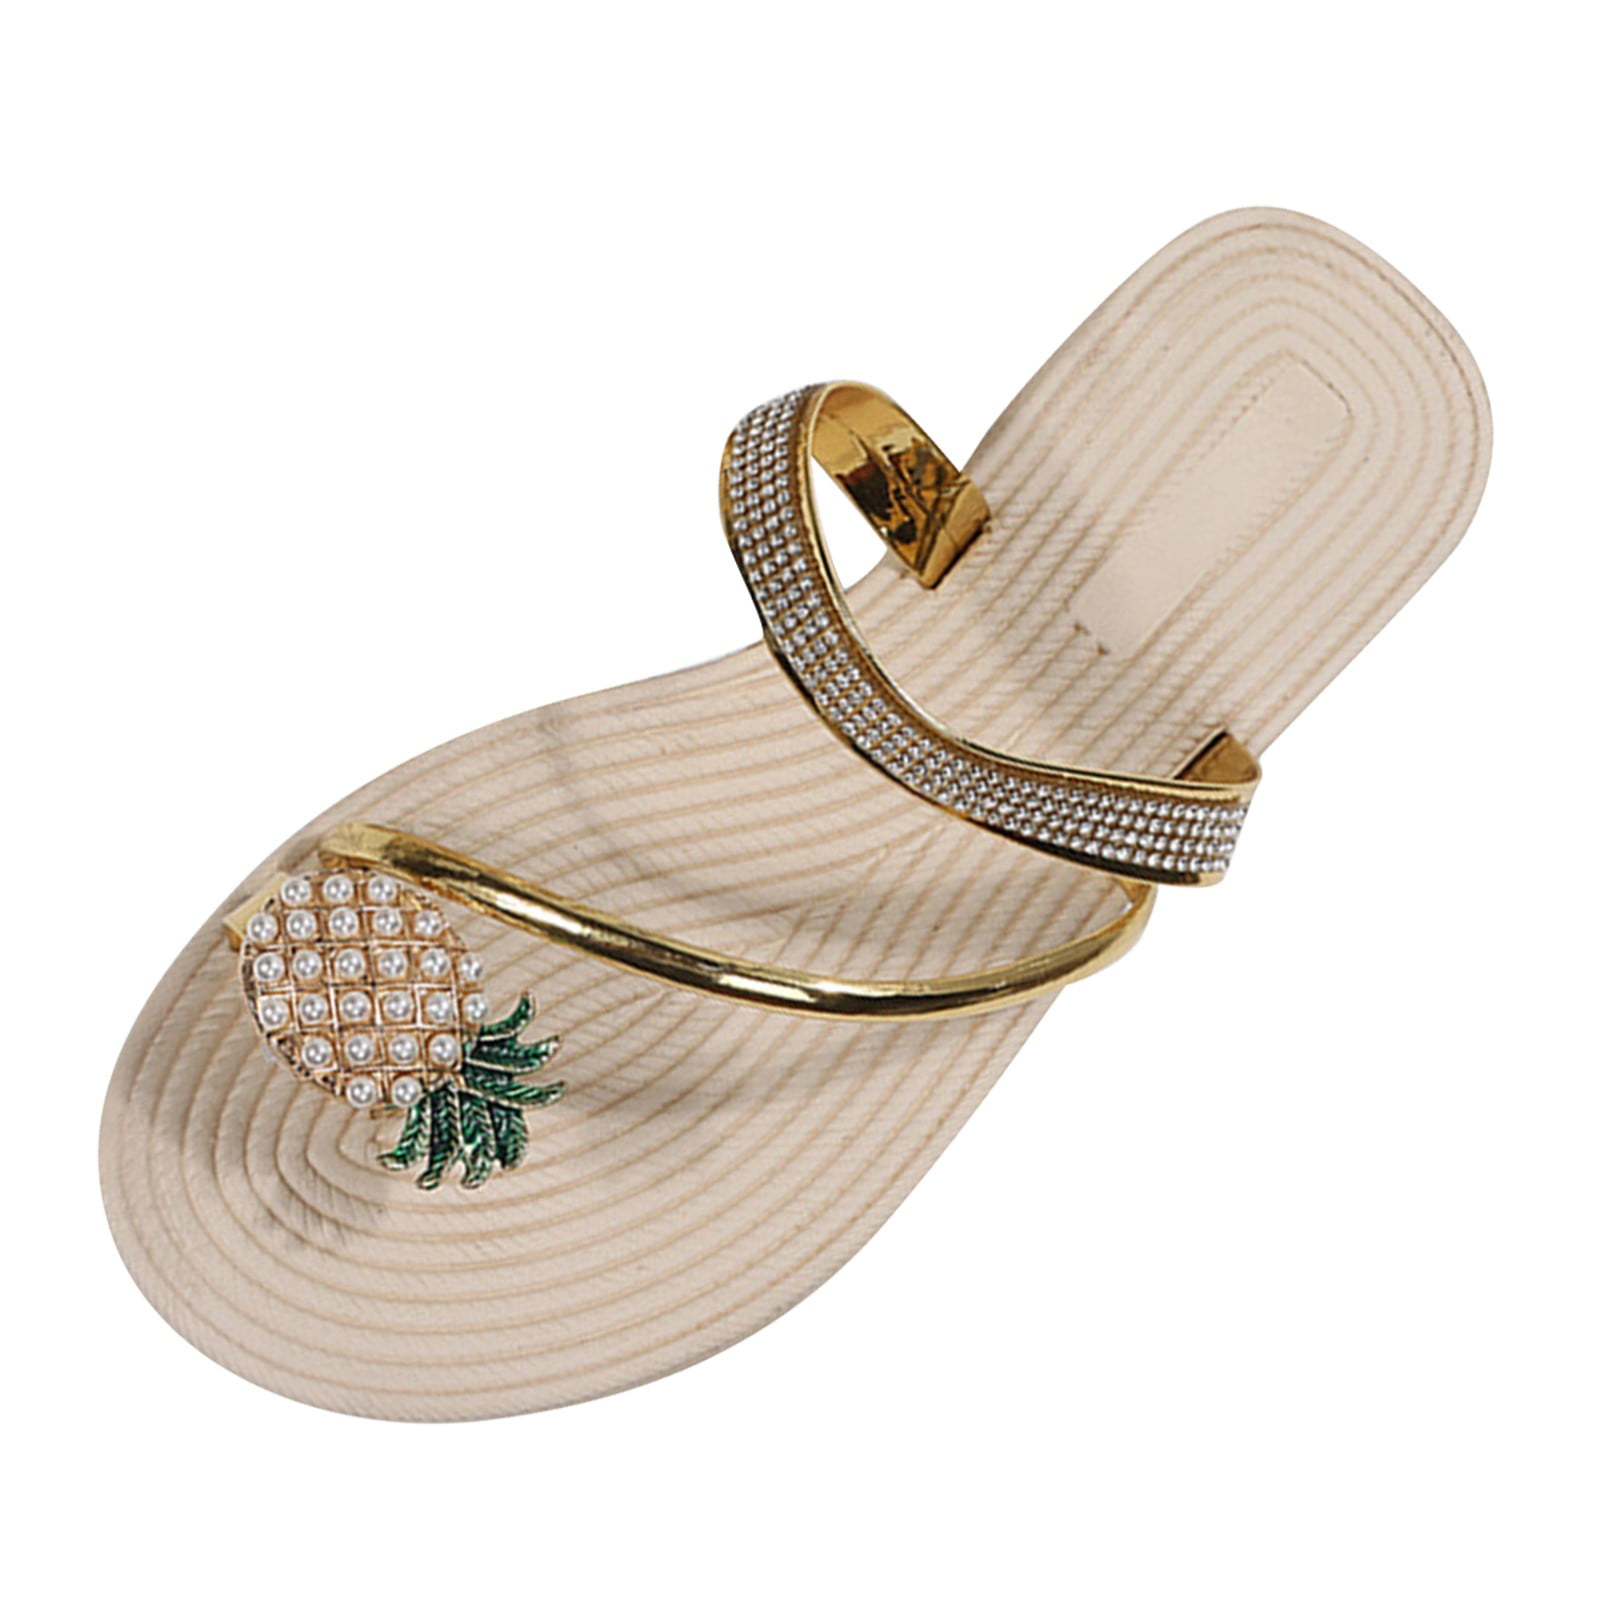 YUHAOTIN Travel Slippers Women' Slippers Pineapple Clip Toe Slippers ...